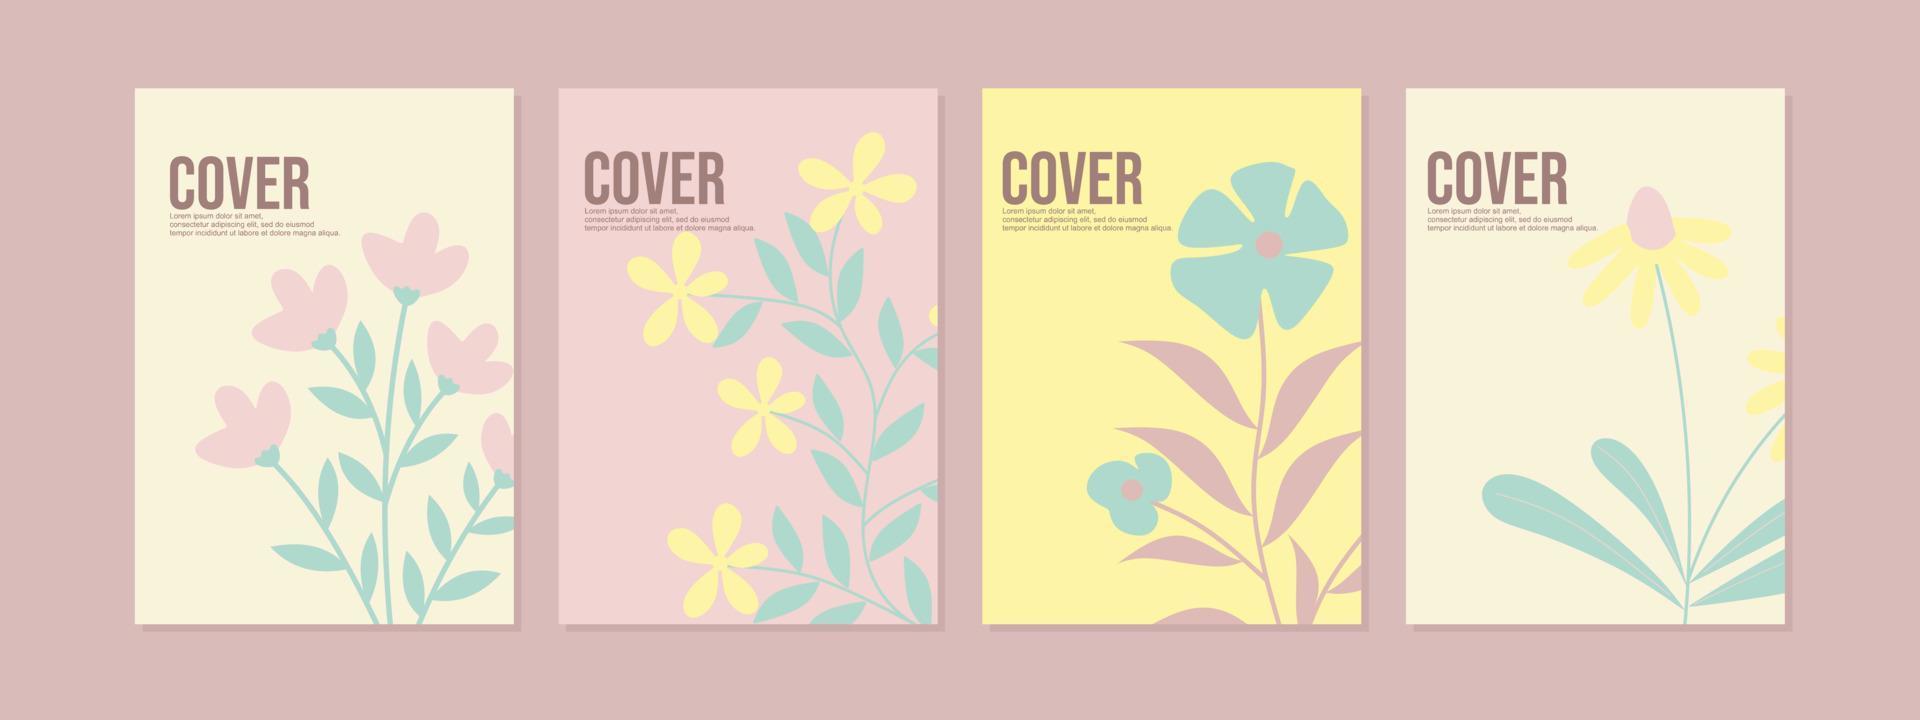 Schreibbuch-Cover-Design mit handgezeichnetem Blumenhintergrund. pastellfarbenes Design. Umschlag im A4-Format für Bücher, Zeitschriften, Kataloge, Poster, Tagebücher vektor